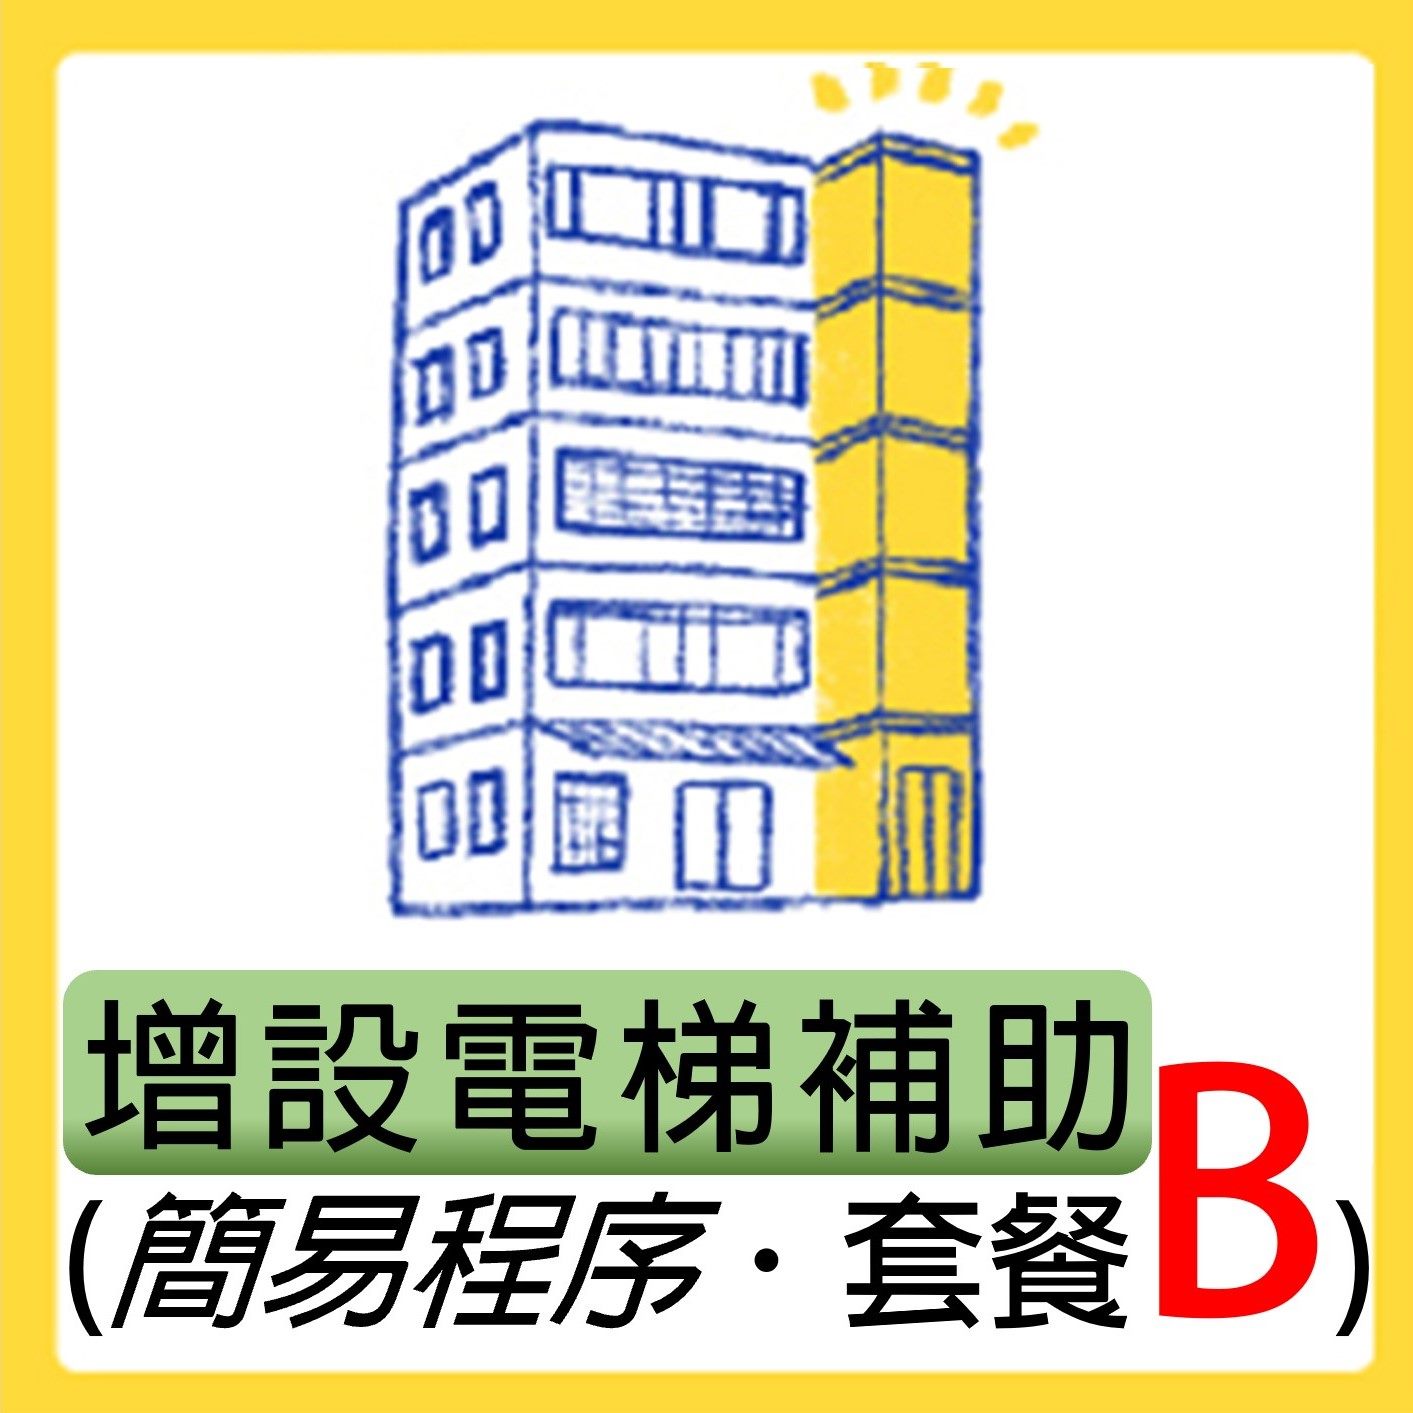 臺北市協助老舊建築物更新增設電梯補助申請專區-套餐B